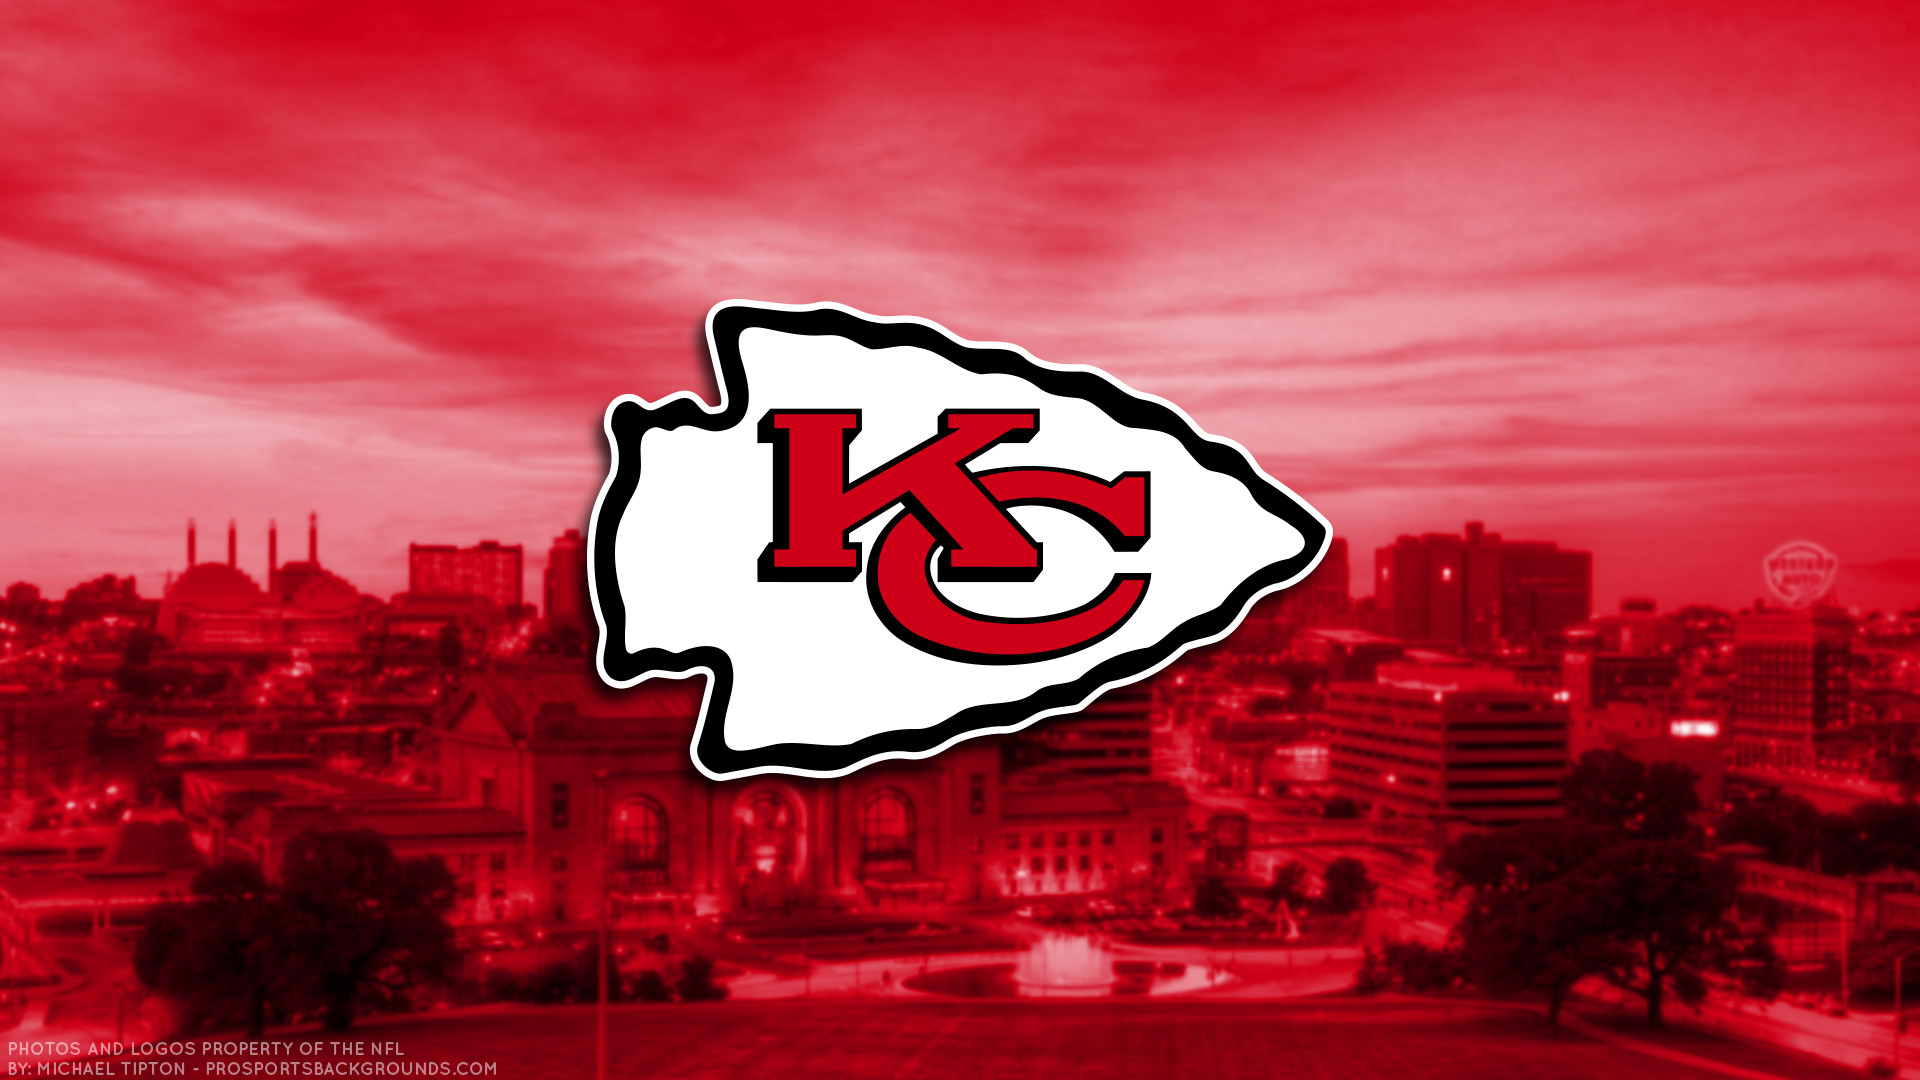 Kansas City Chiefs 2017 football logo wallpaper pc desktop computer